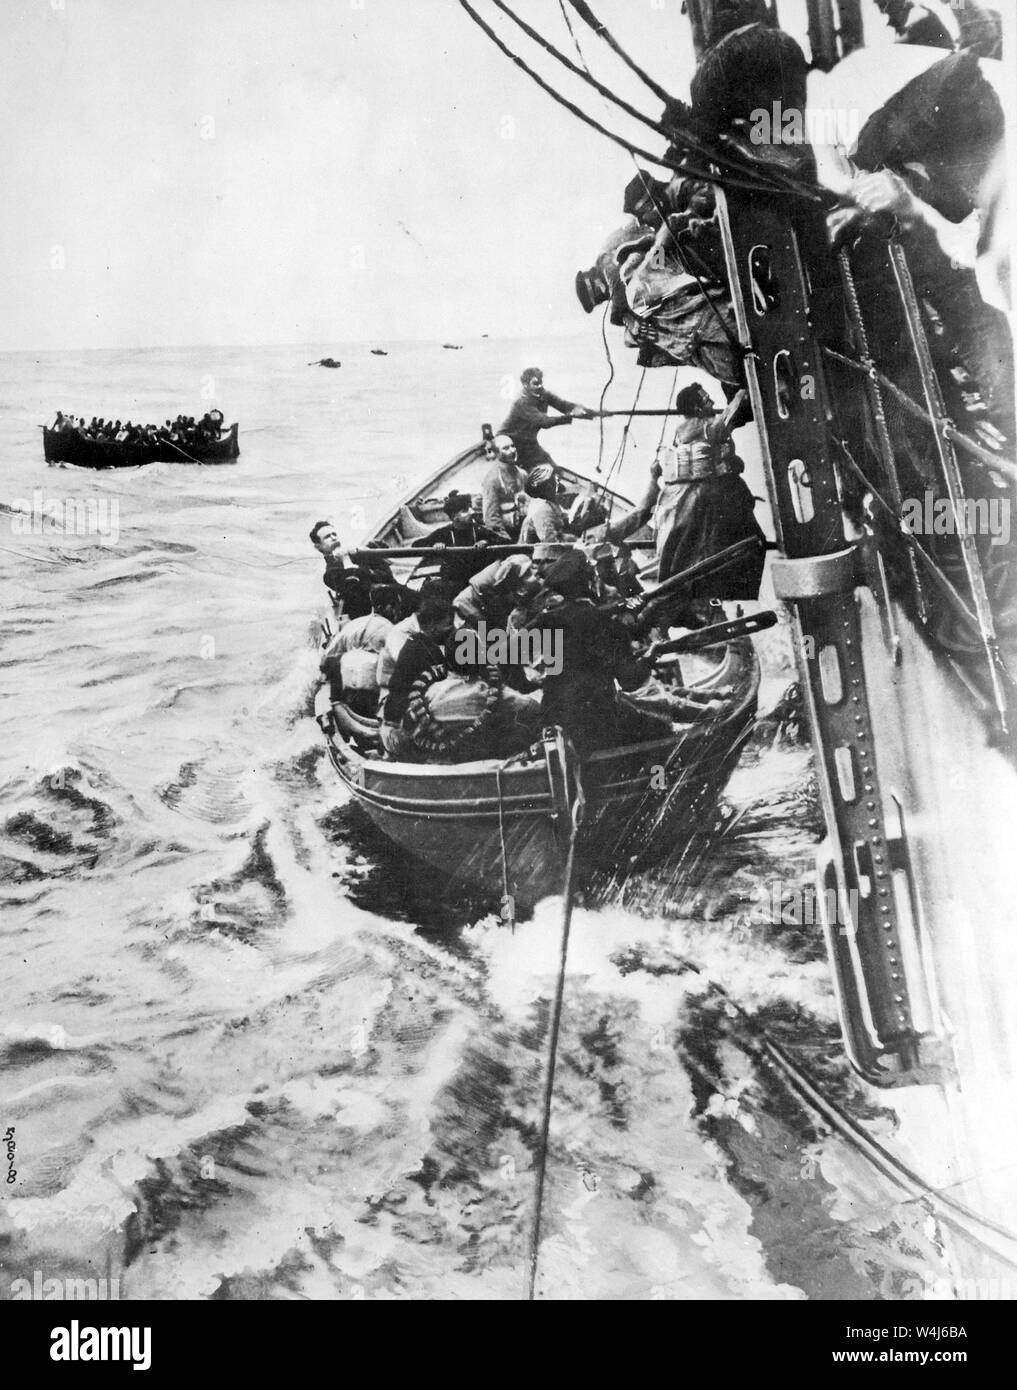 Les passagers rescapés de la paquebot français Sontay, paquebot français Sontay naufrage en Méditerranée après avoir été torpillé par un sous-marin allemand, au cours de la Première Guerre mondiale 16 Avril 1917 Banque D'Images